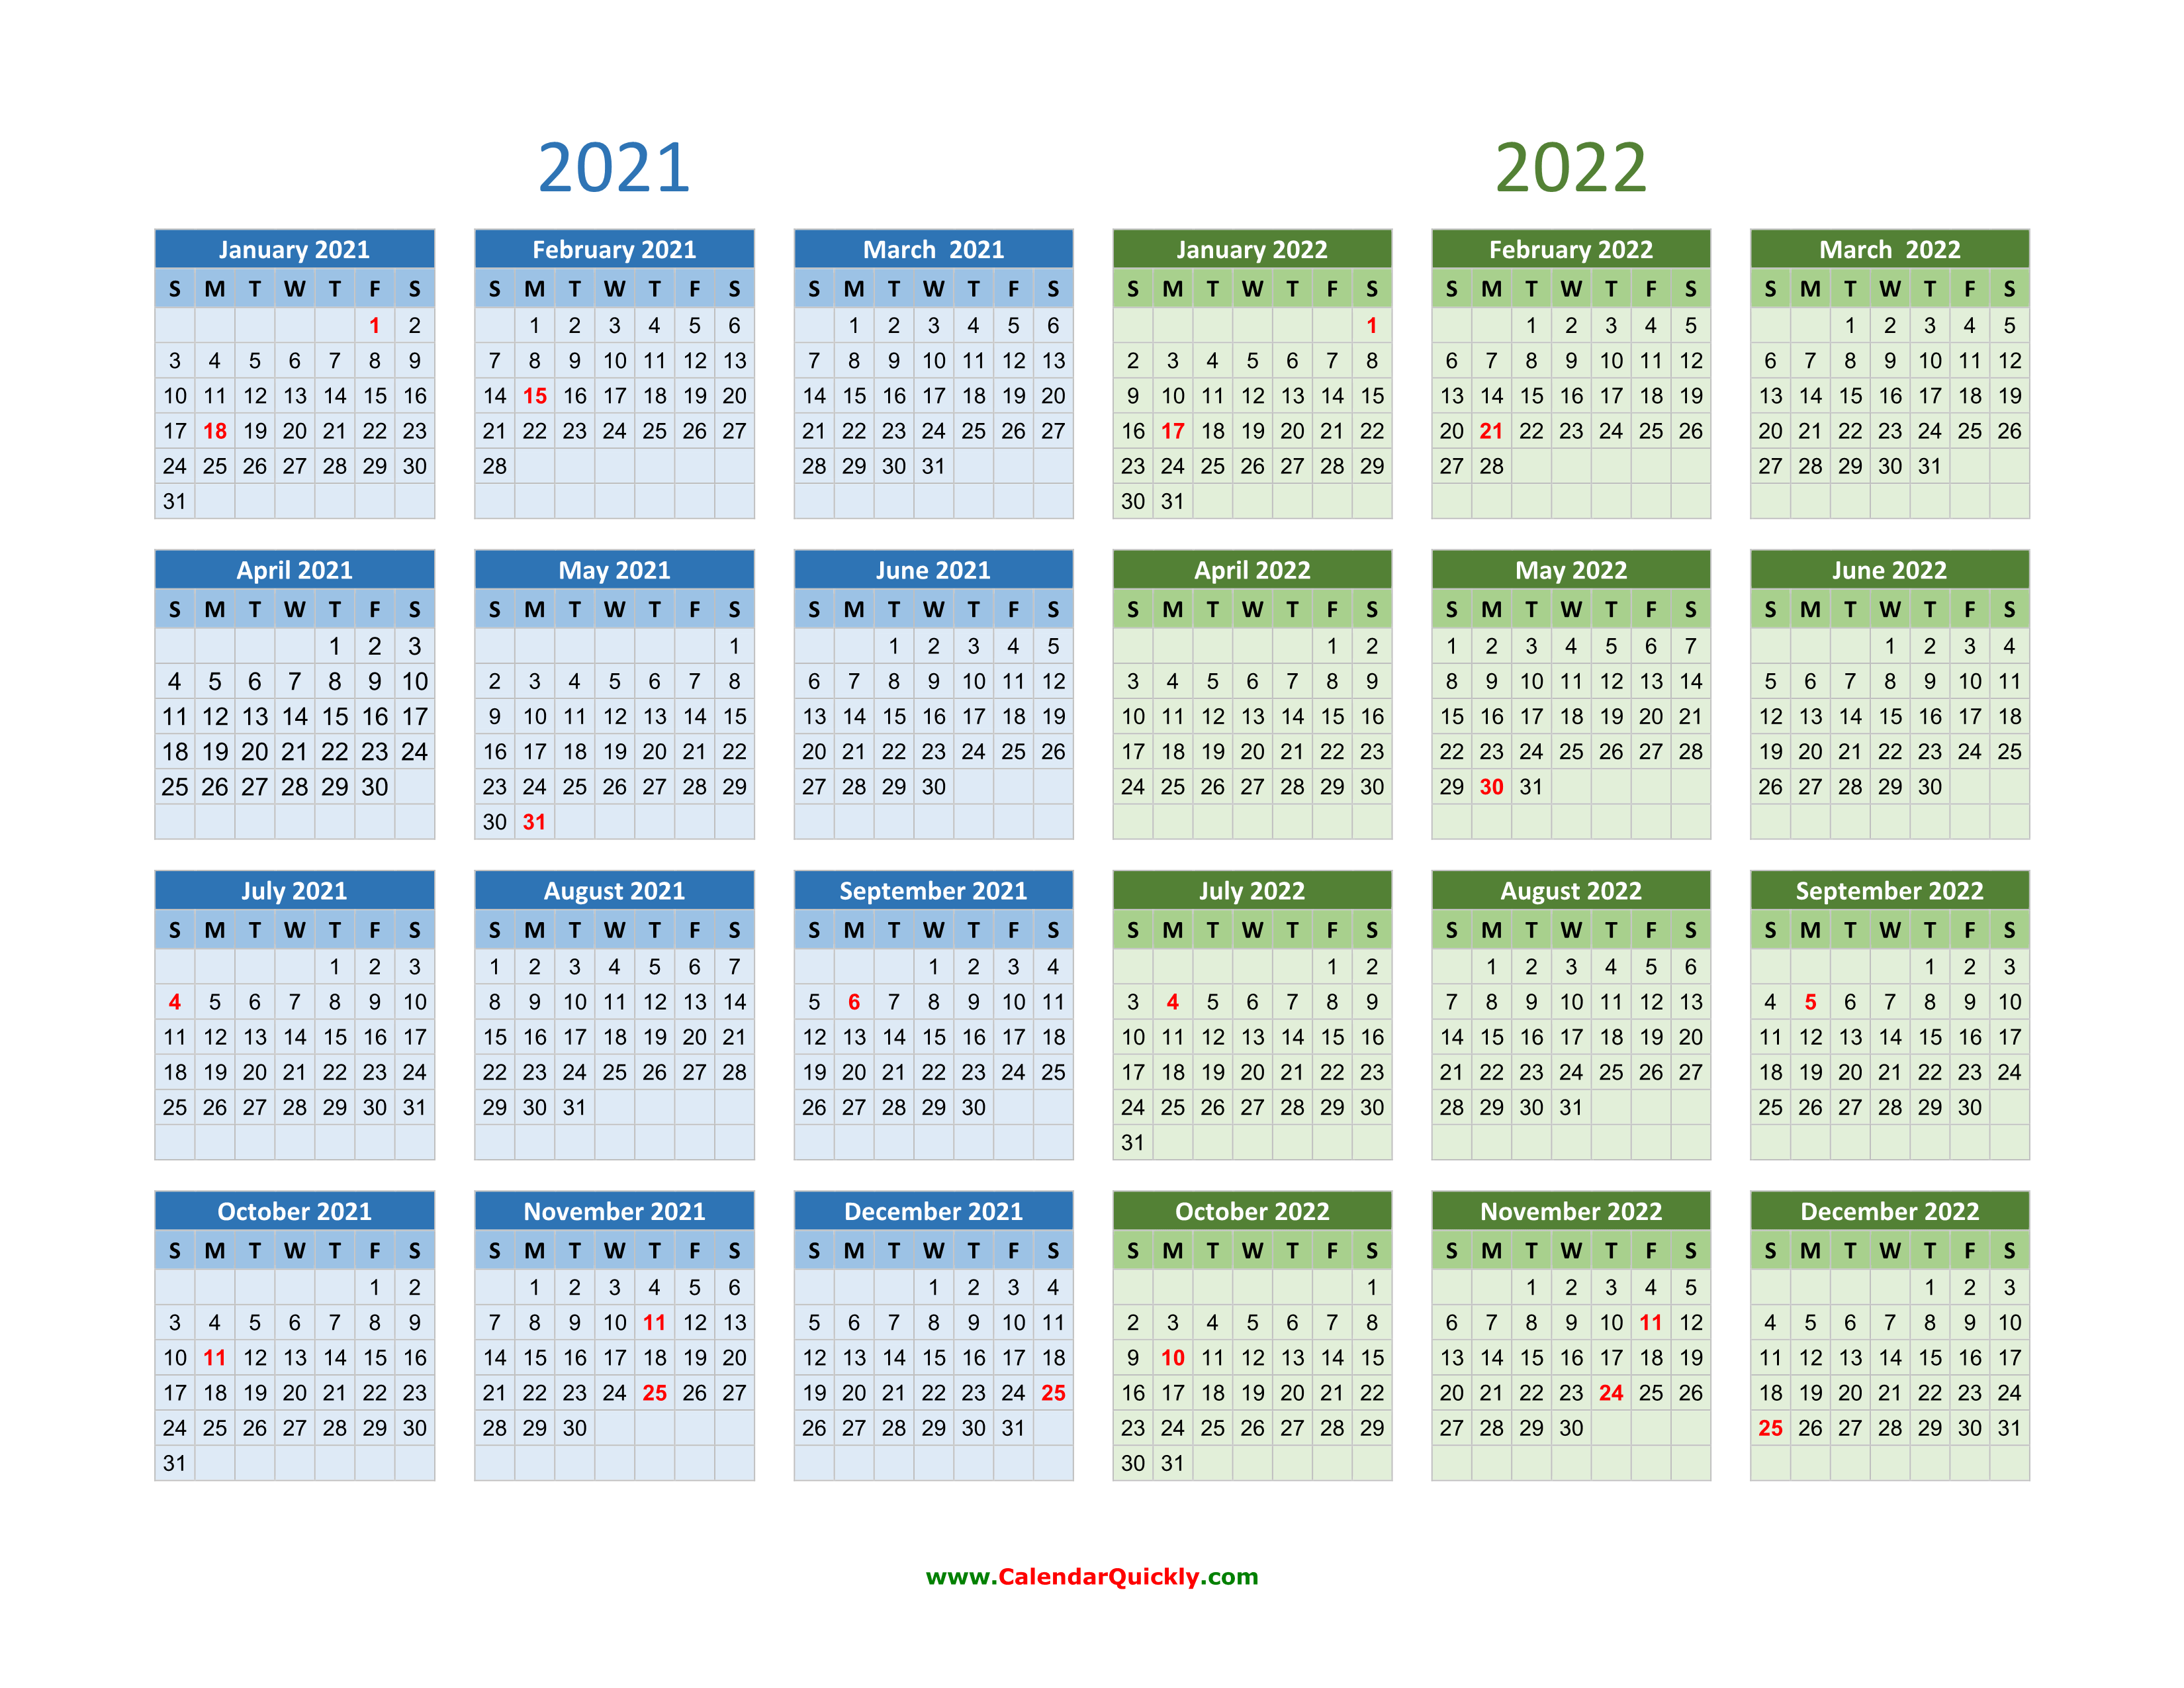 Calendario 2022 2021 Calendario 2021 Images and Photos finder